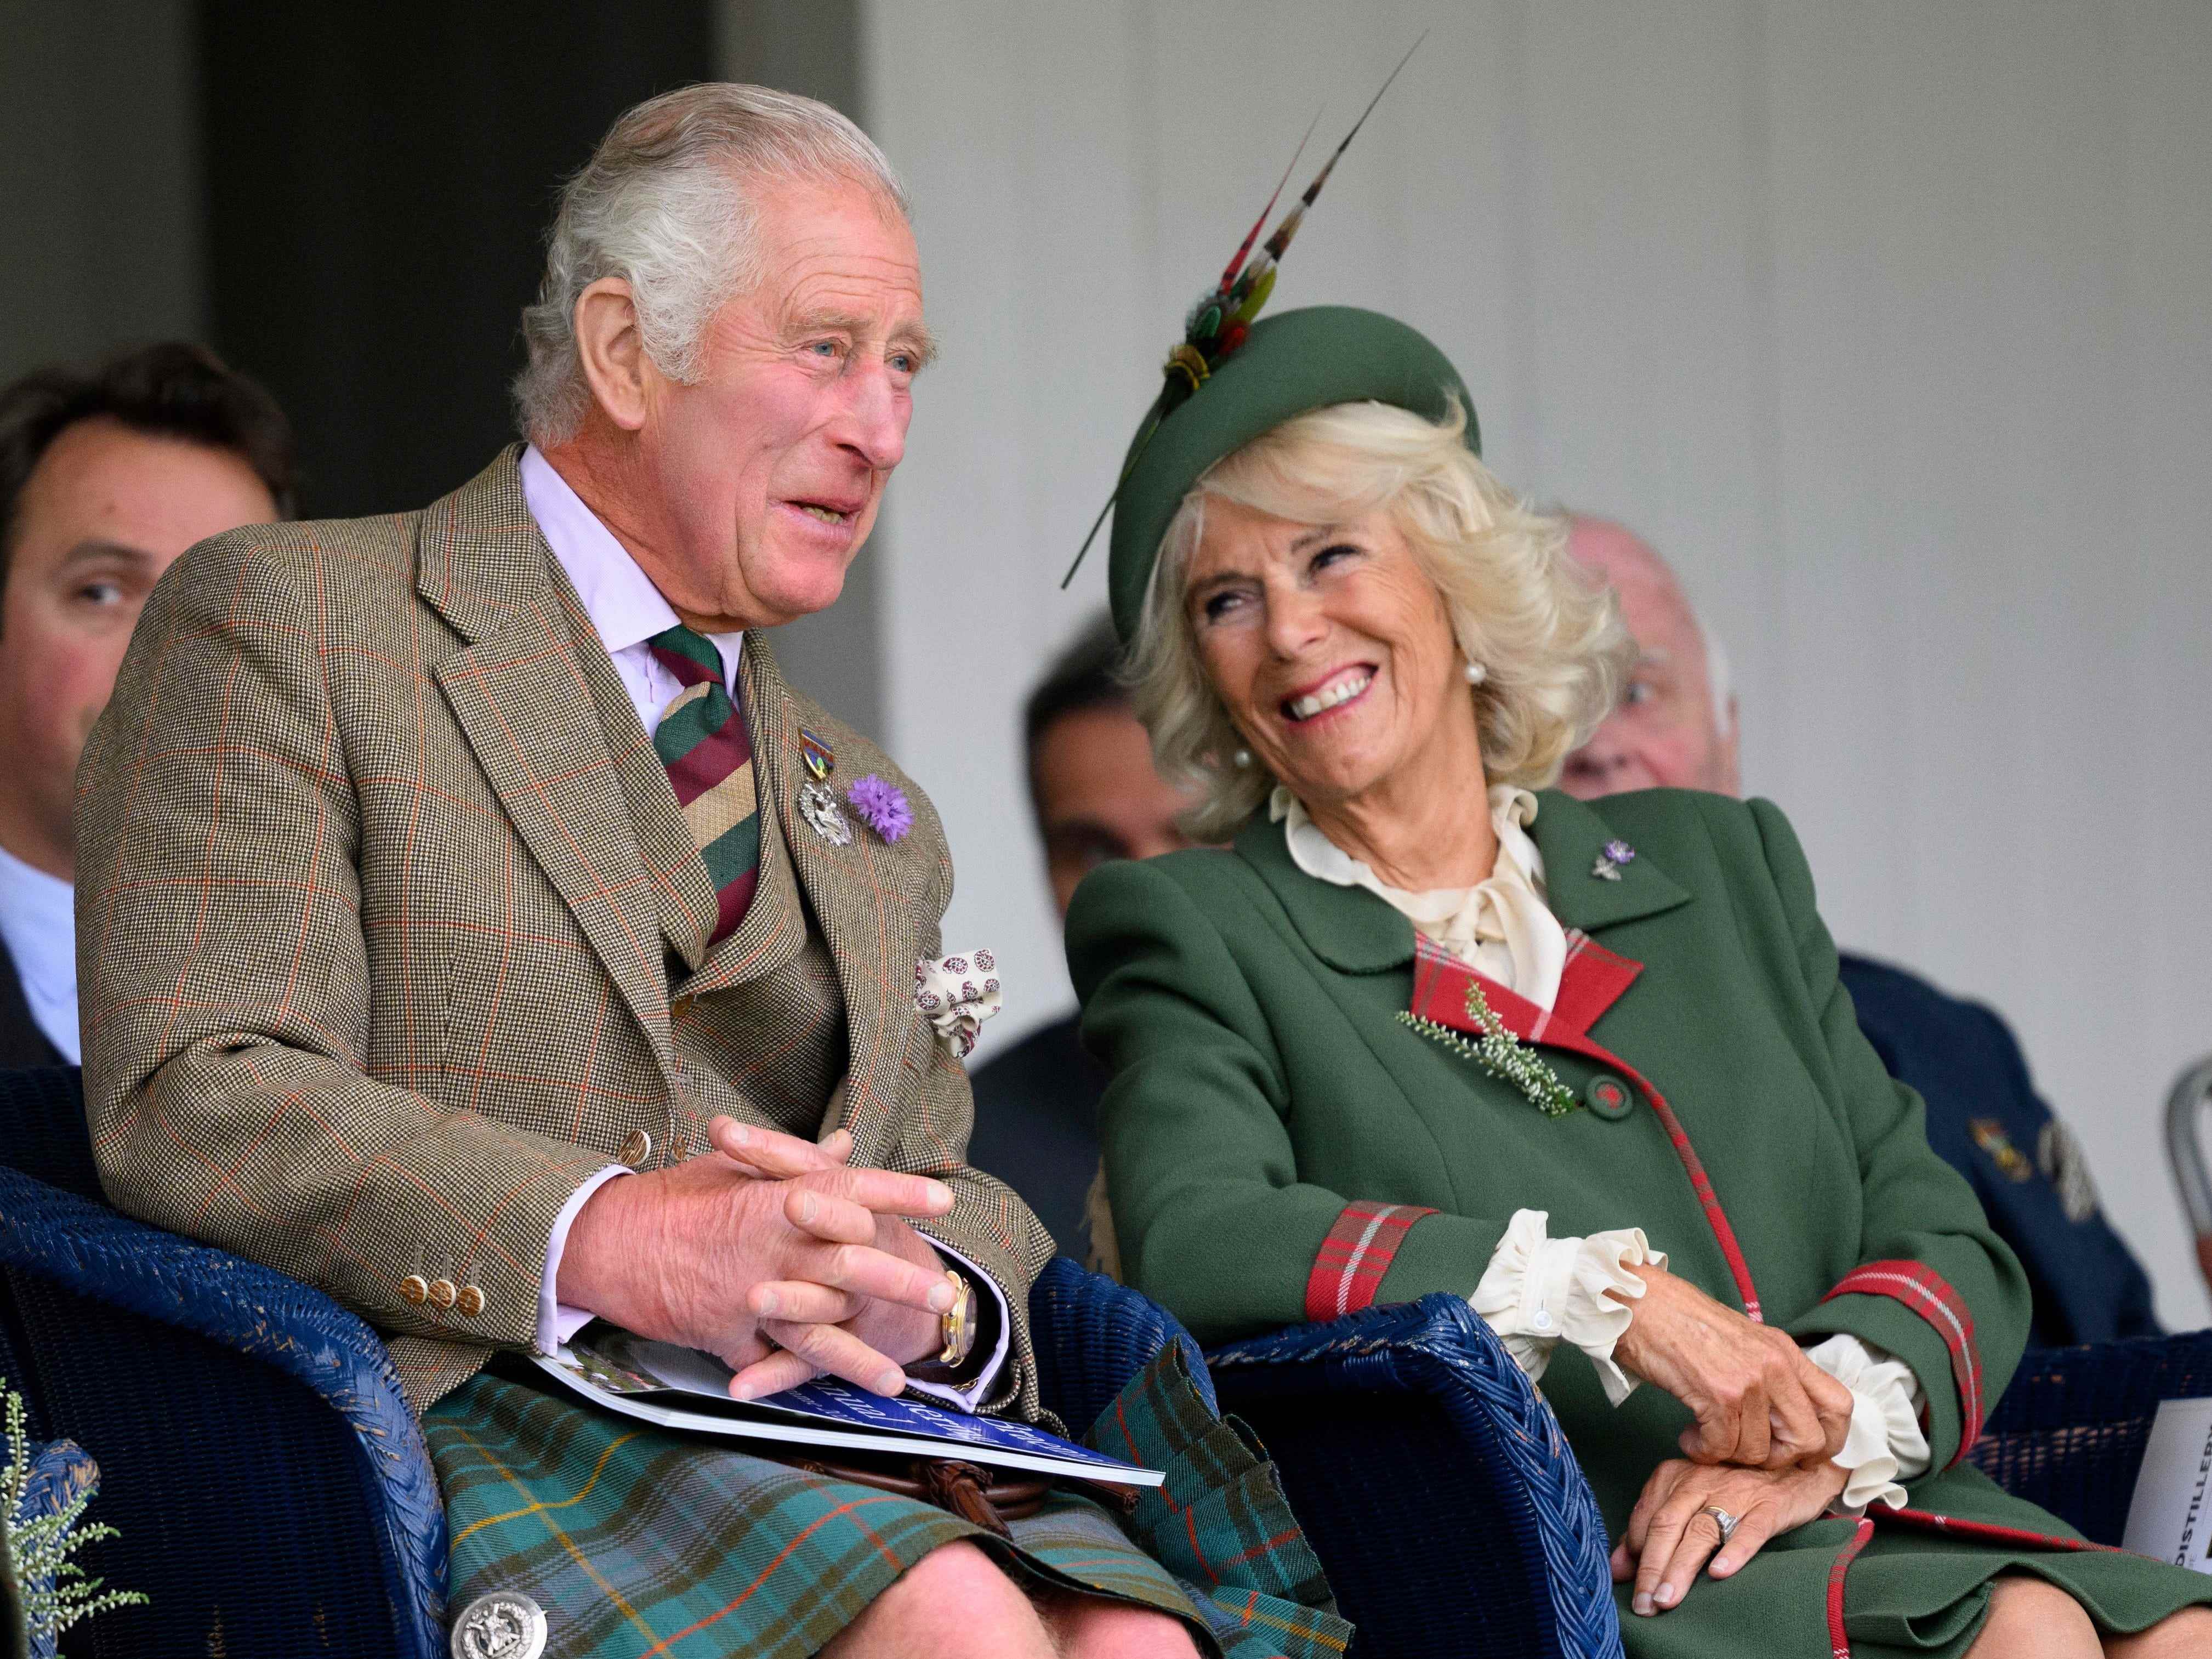 King Charles und Camilla, Queen Consort, bei den Braemar Games in Schottland im September 2022.